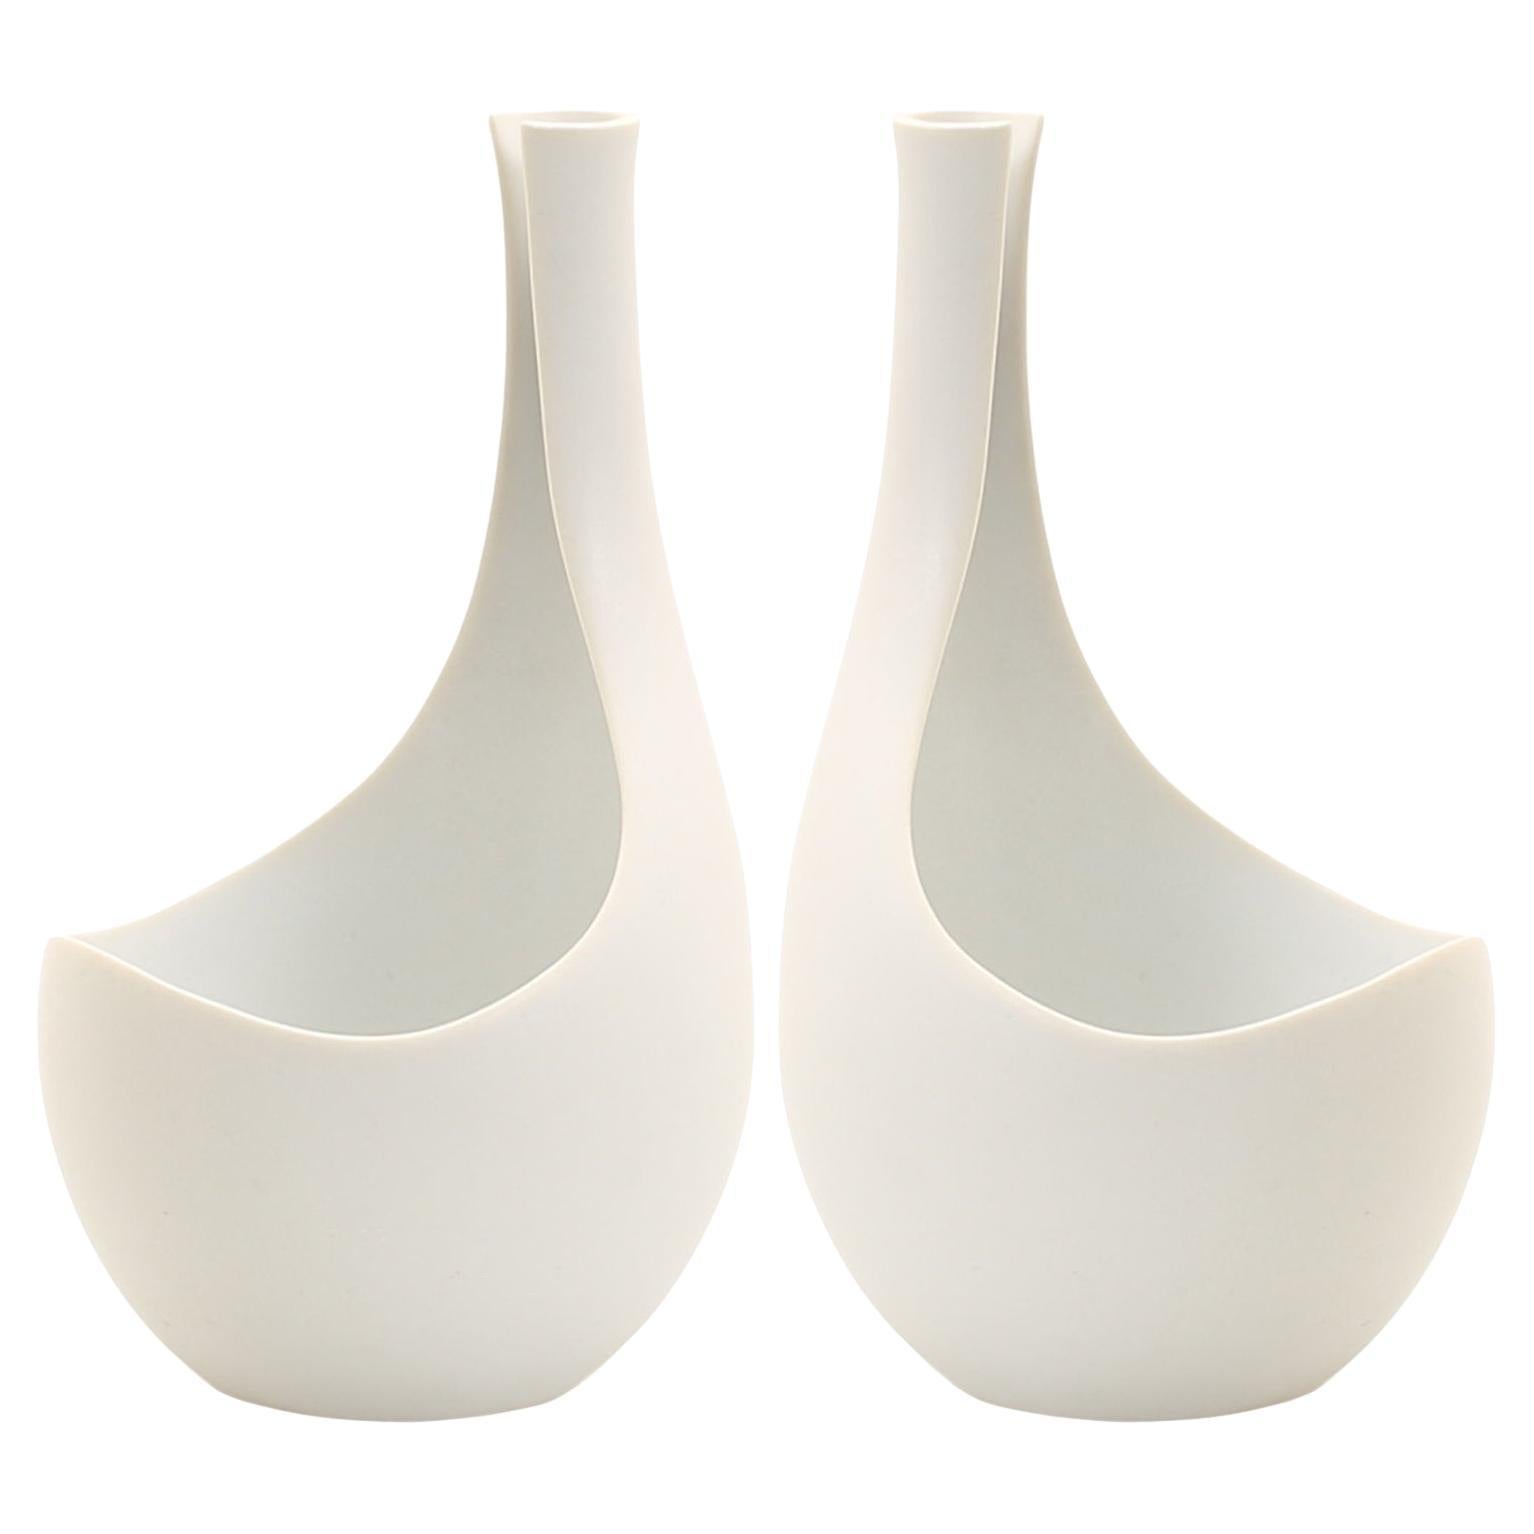 2 Mid-Century Modern White Vases "Pungo" by Stig Lindberg, made in Gustavsberg